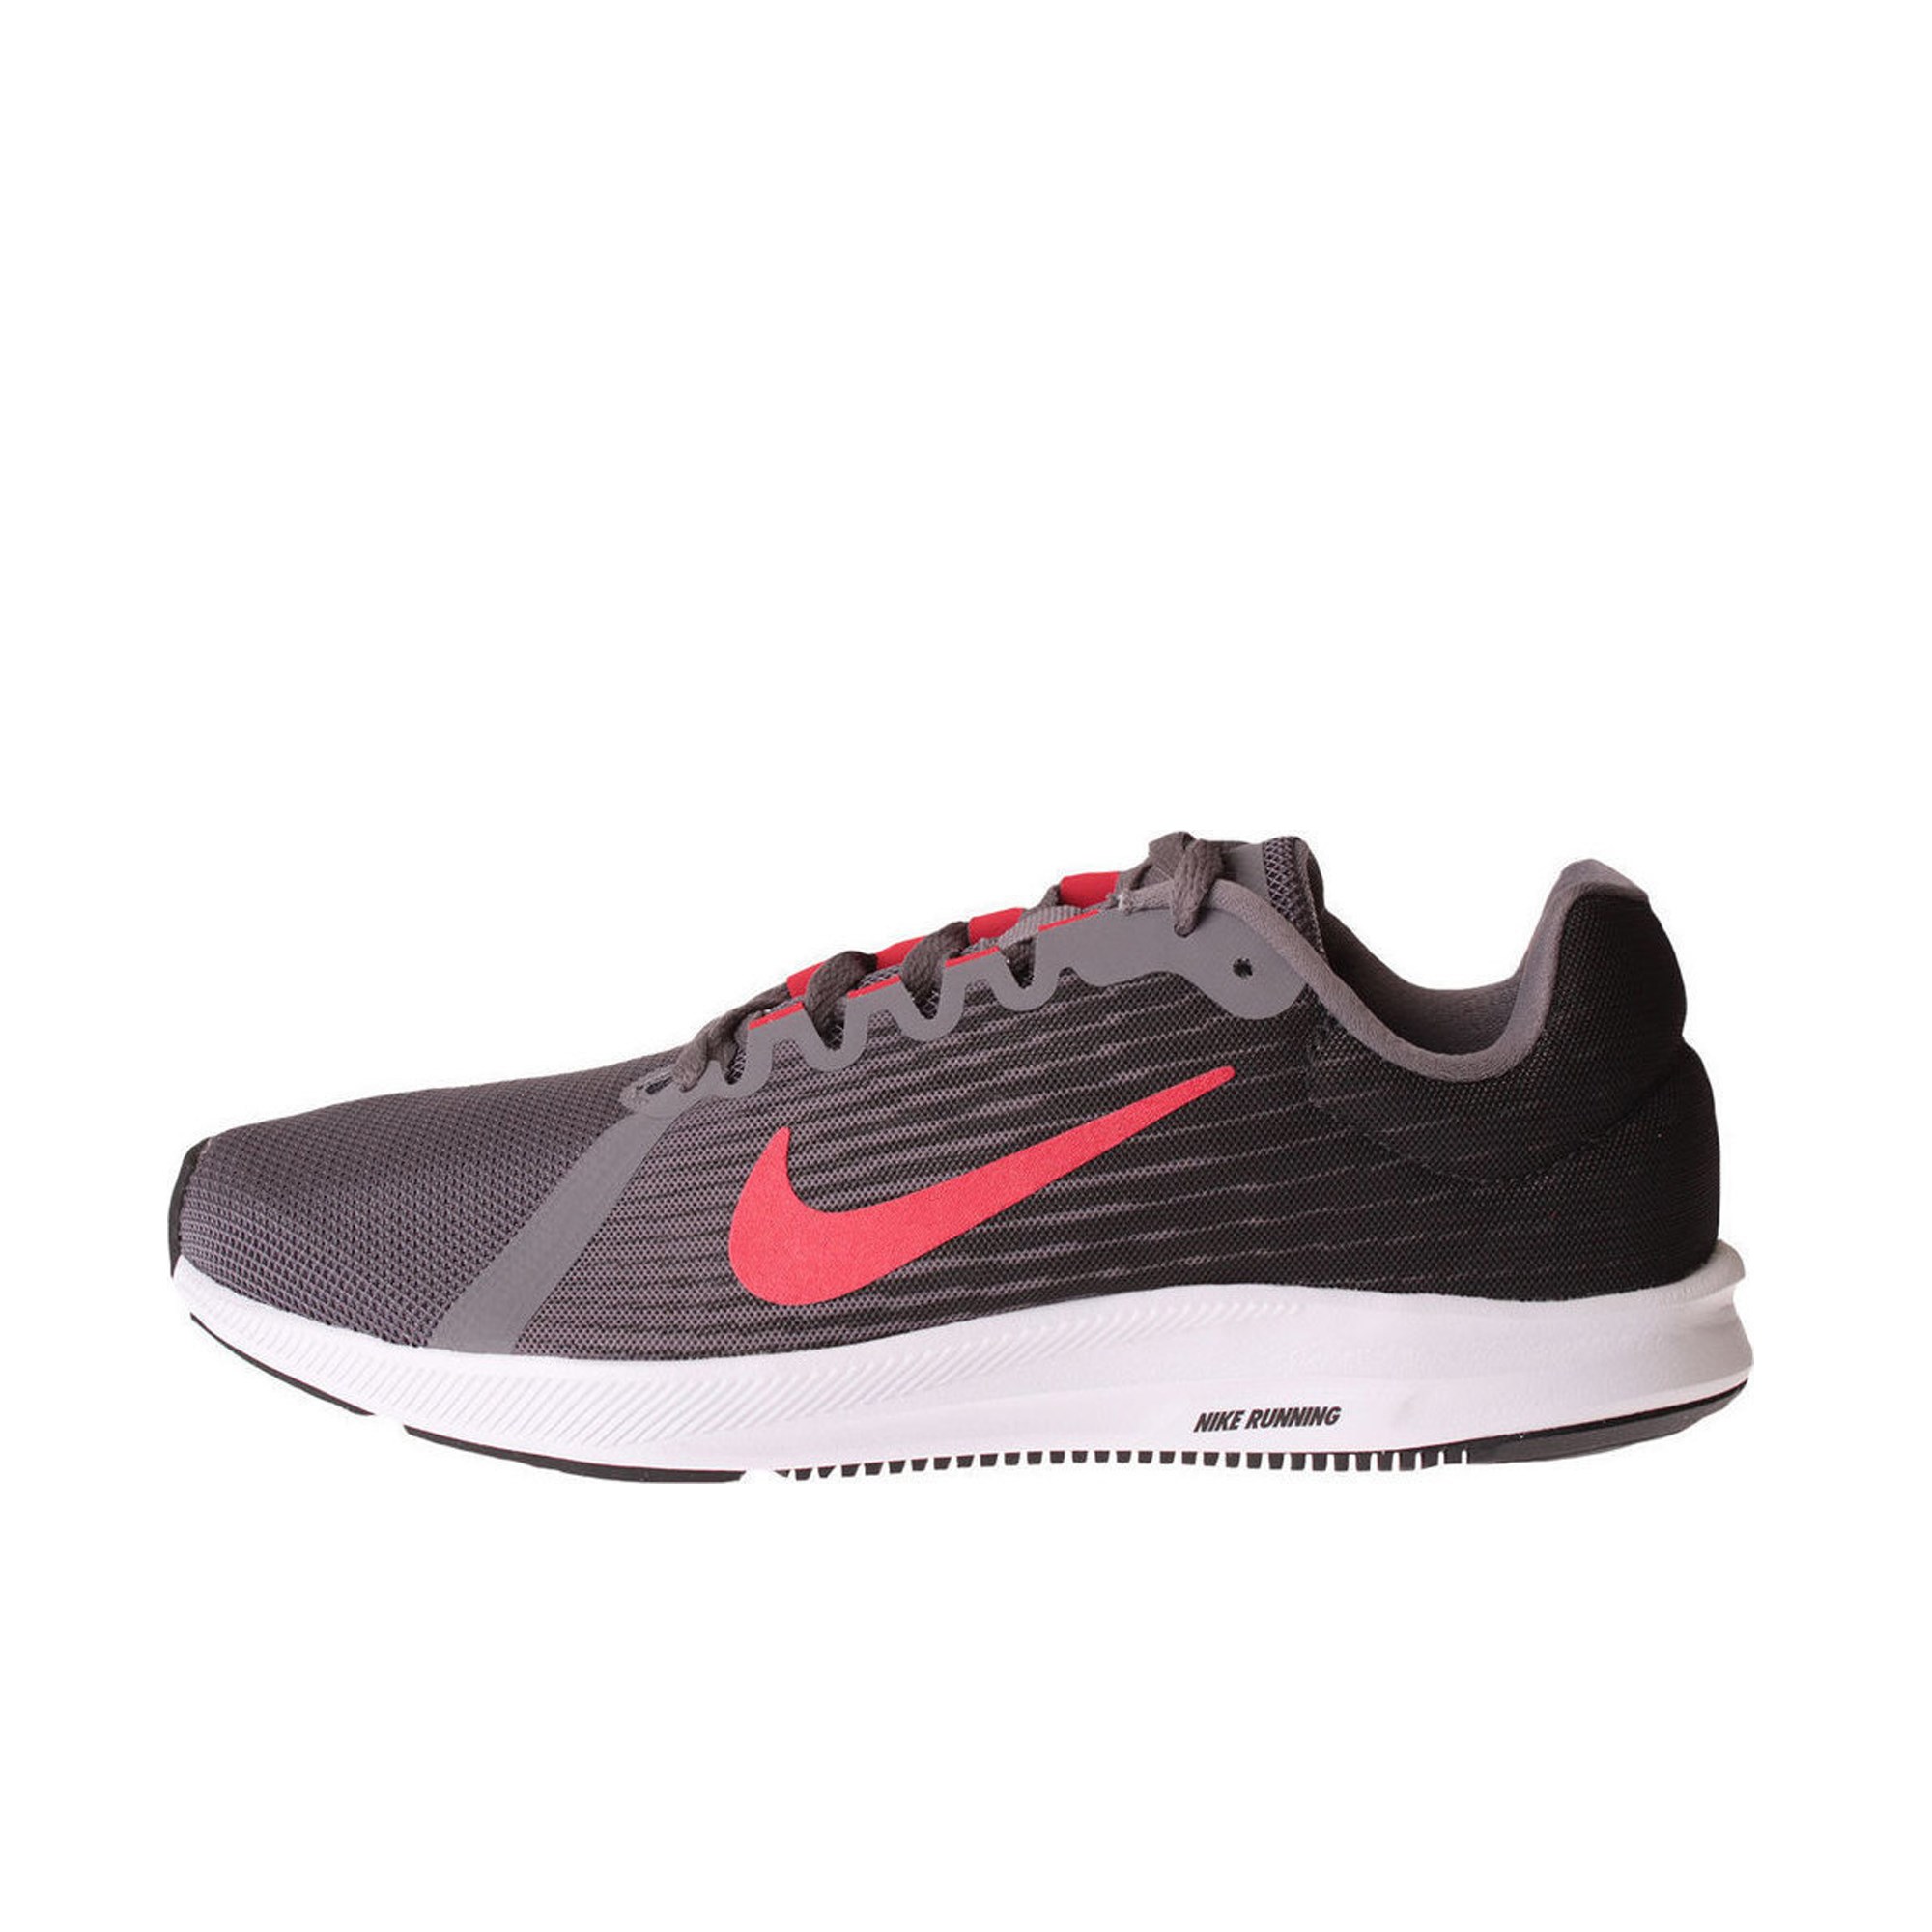 Nike Downshifter 8 Kadın Spor Ayakkabı Ürün kodu: 908984-005 | Etichet Sport